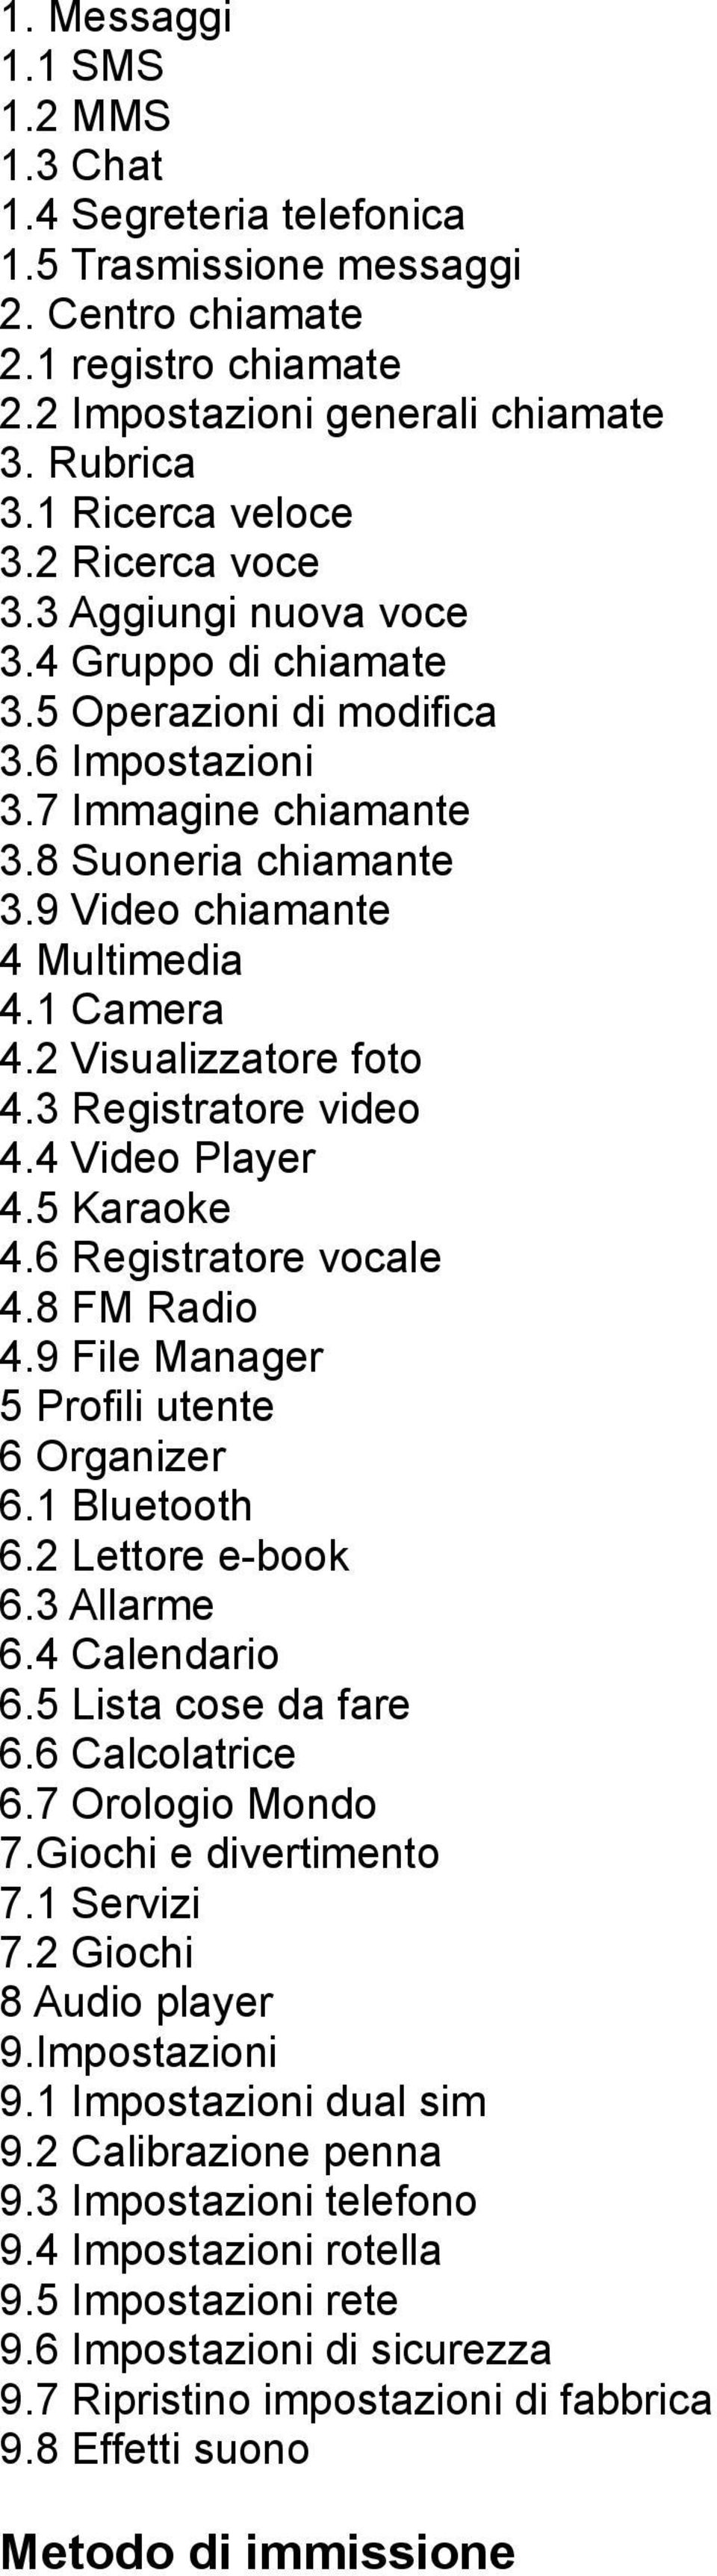 2 Visualizzatore foto 4.3 Registratore video 4.4 Video Player 4.5 Karaoke 4.6 Registratore vocale 4.8 FM Radio 4.9 File Manager 5 Profili utente 6 Organizer 6.1 Bluetooth 6.2 Lettore e-book 6.